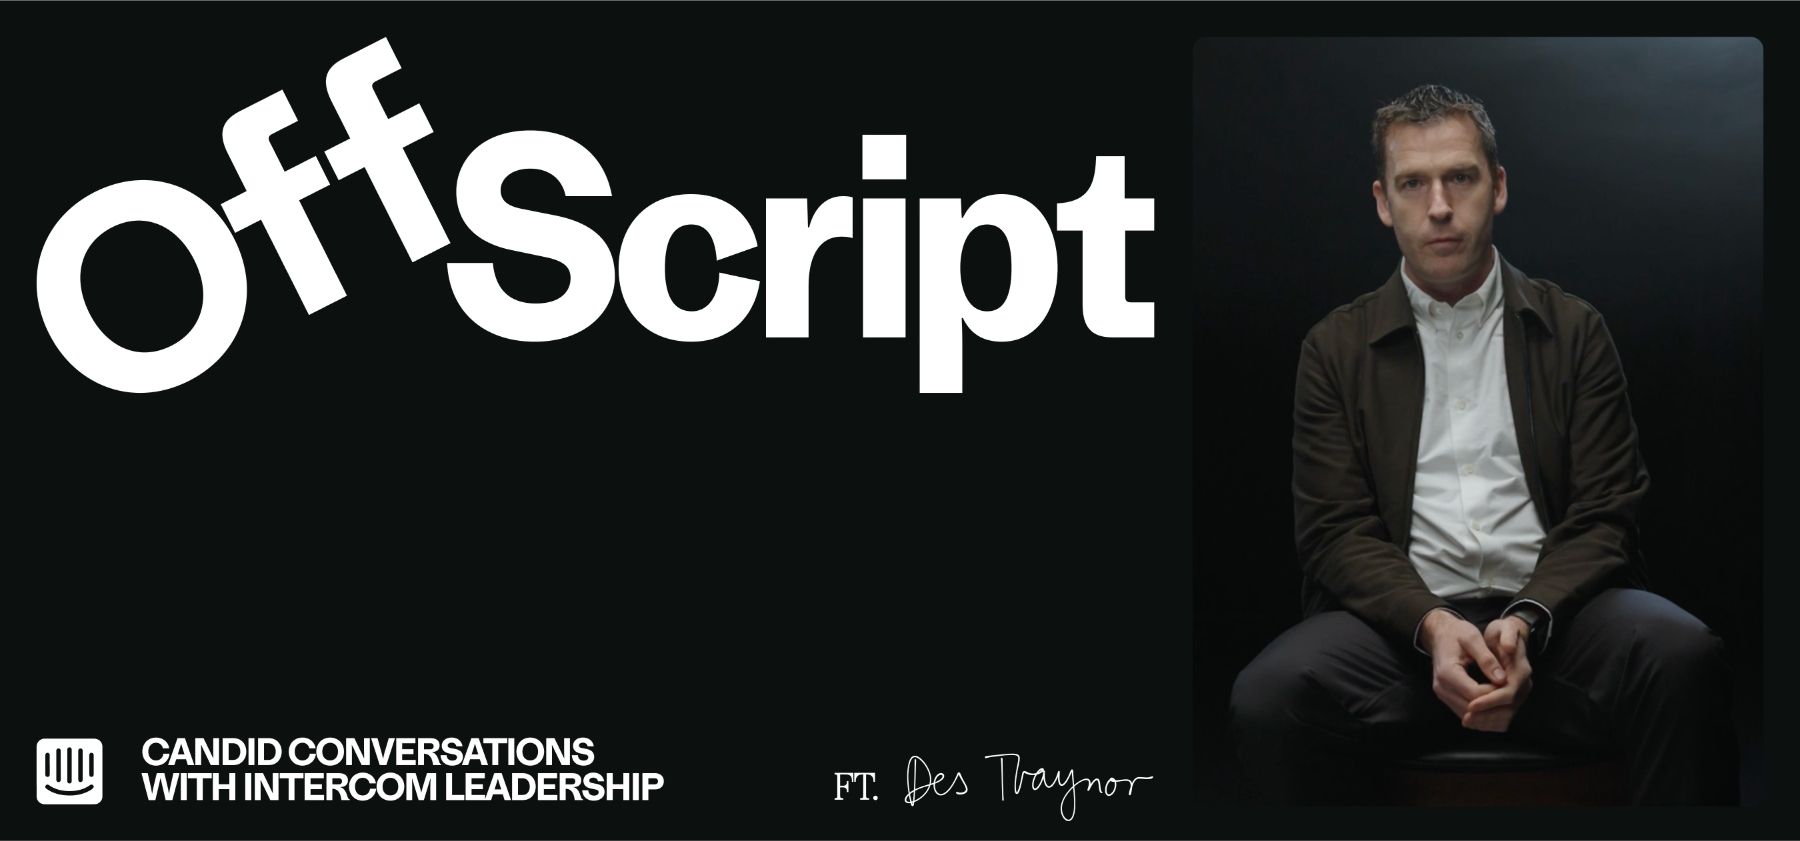 Introducing “Off Script”, a new Intercom series